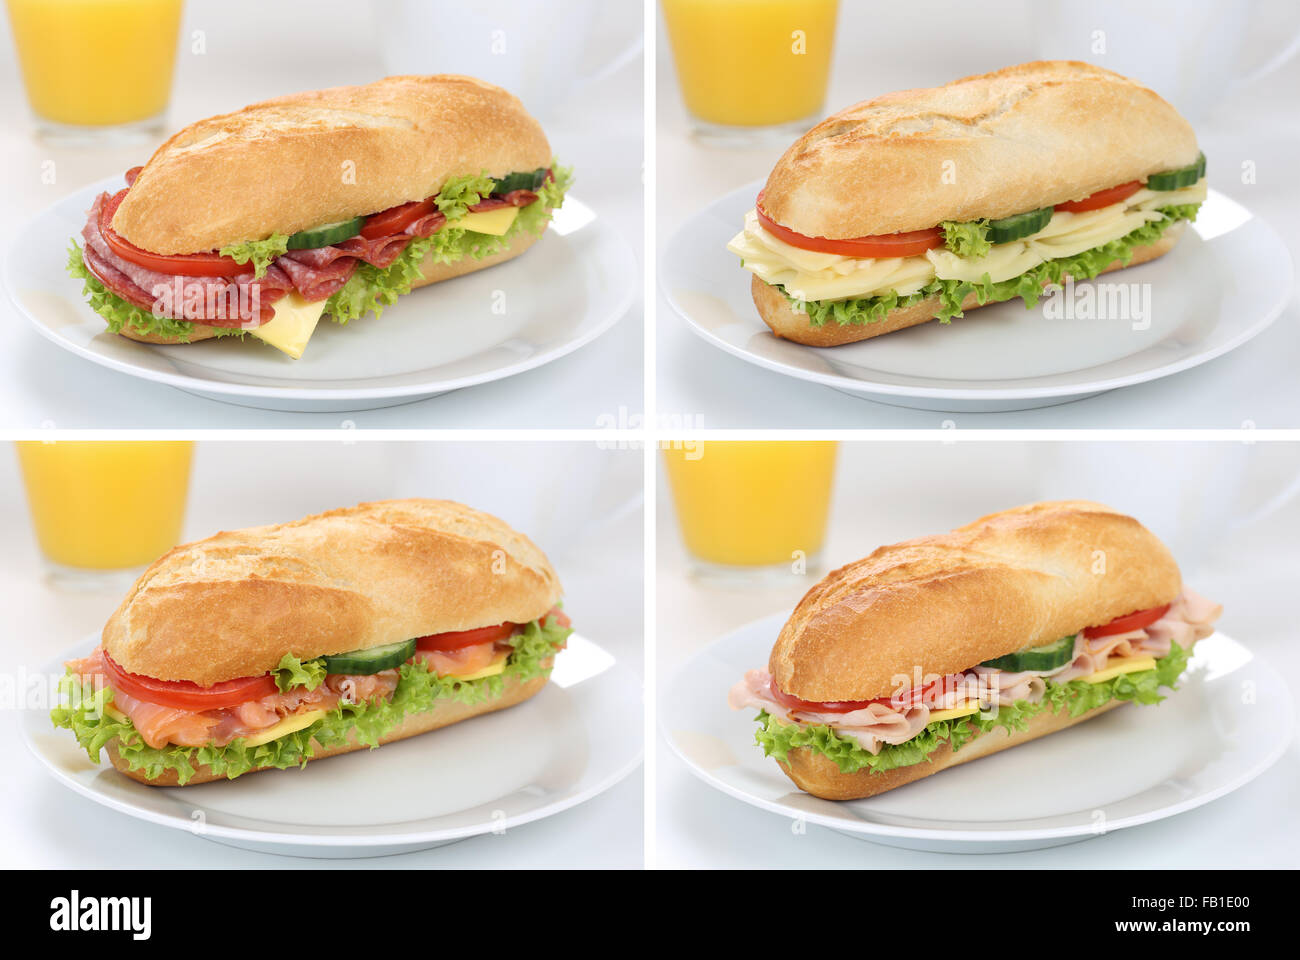 Collection de sandwiches sous baguettes pour le petit déjeuner avec du jambon, salami, fromage, tomates, laitue et le jus d'orange Banque D'Images